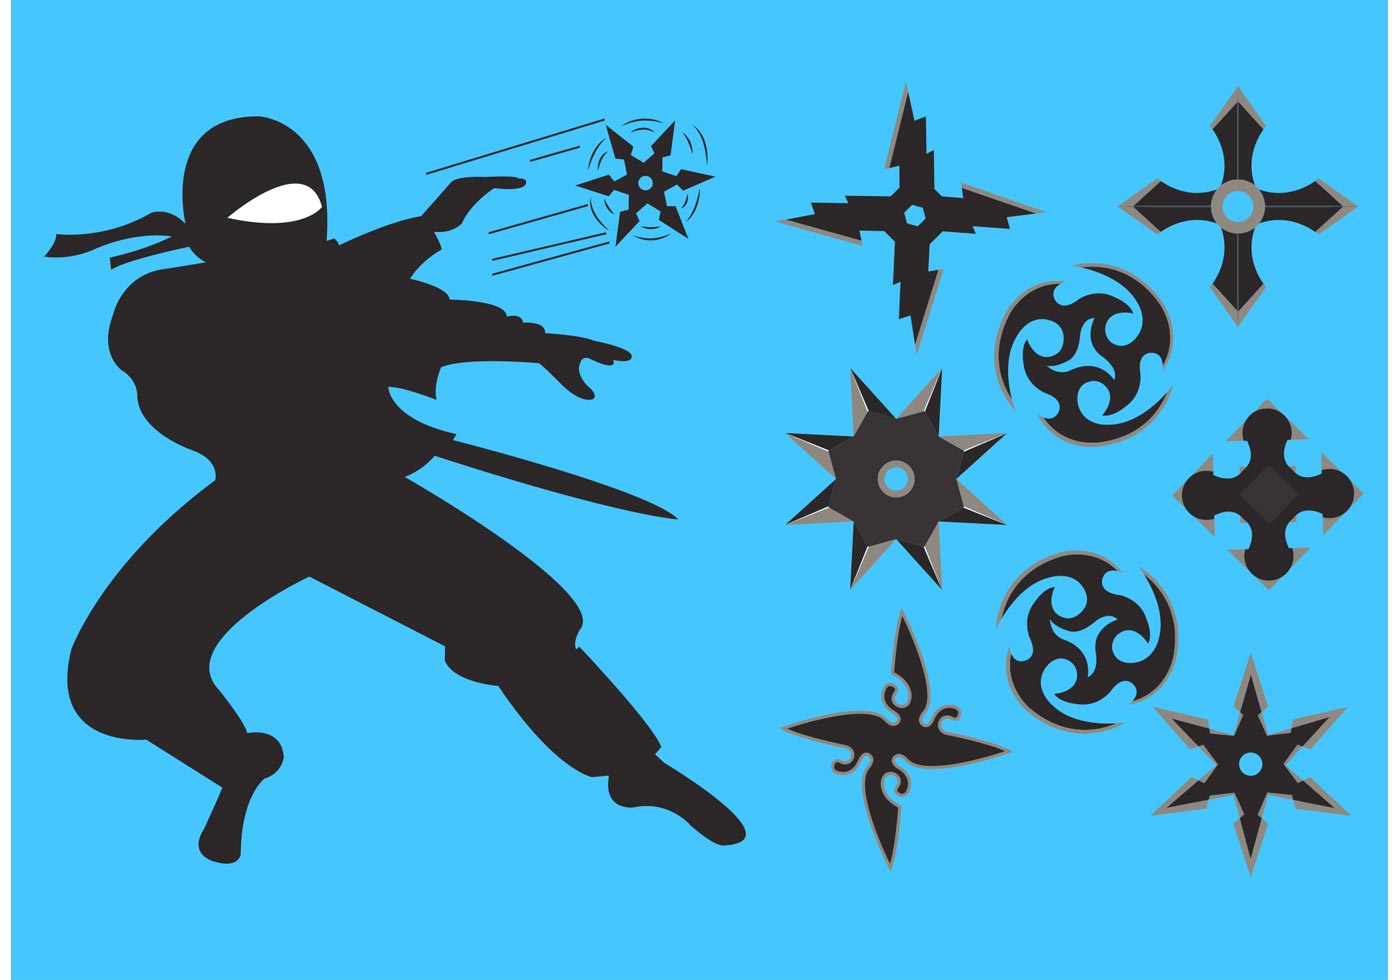 Ninja Throwing Star Vectors - Download Free Vector Art, Stock Graphics ...